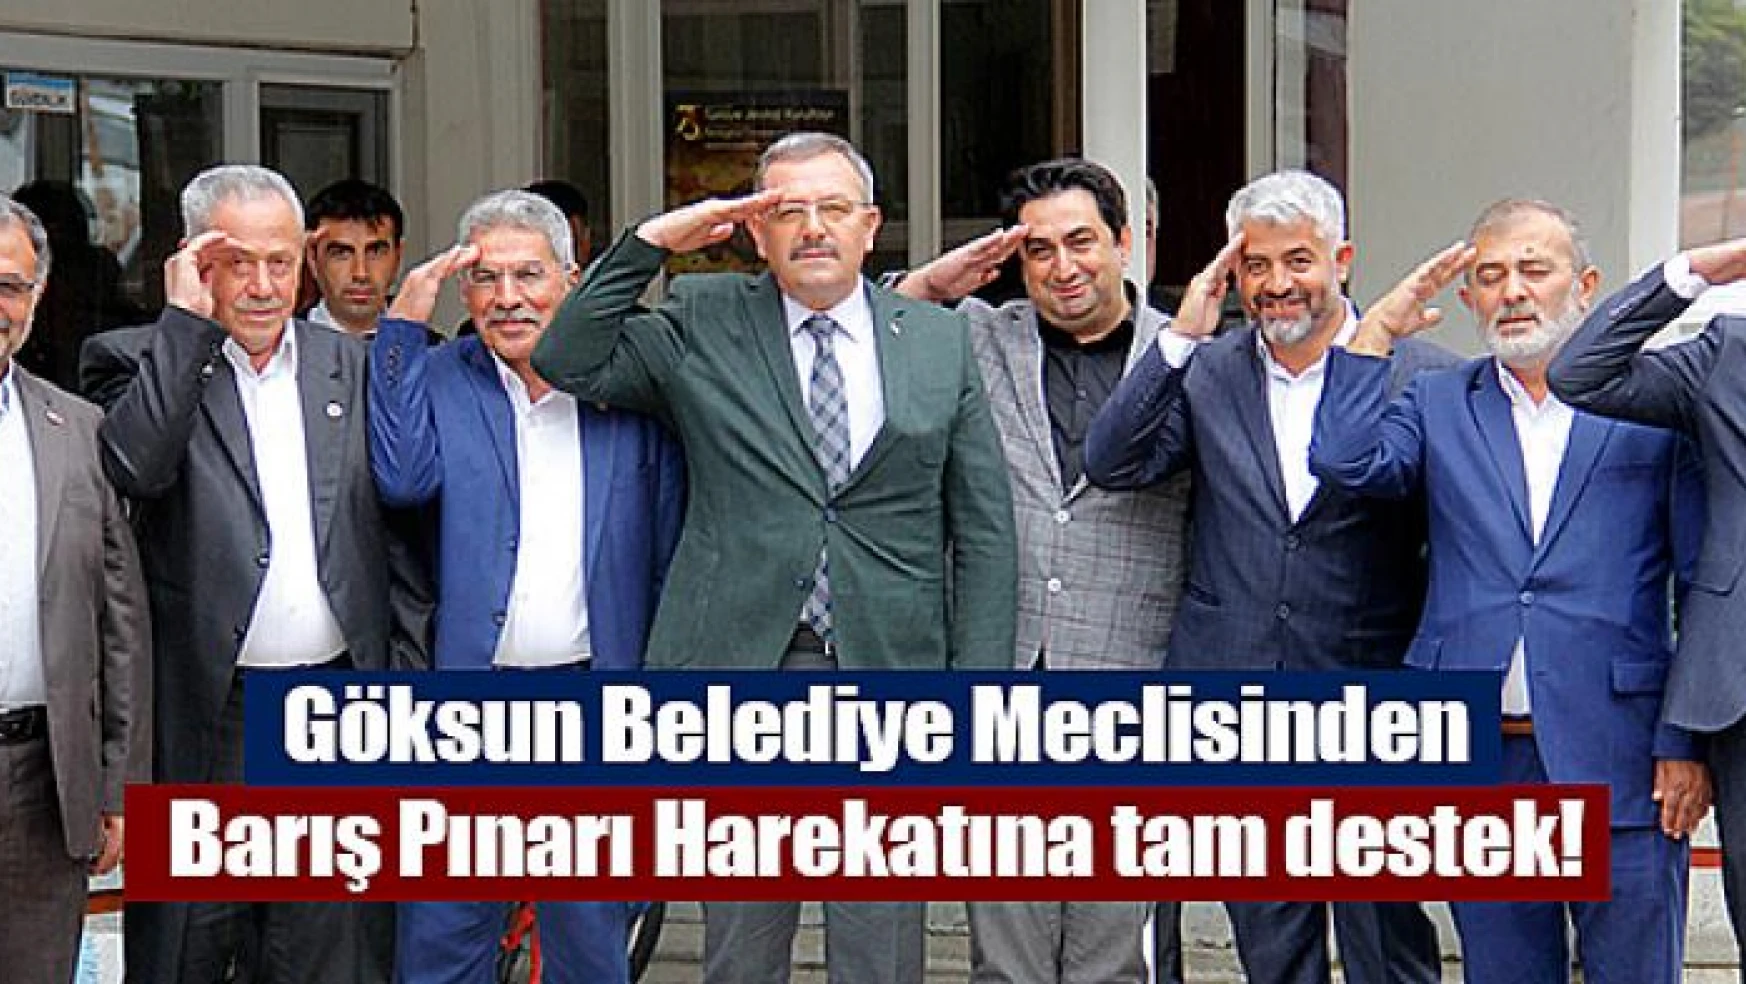 Göksun Belediye Meclisinden Barış Pınarı Harekatına tam destek!